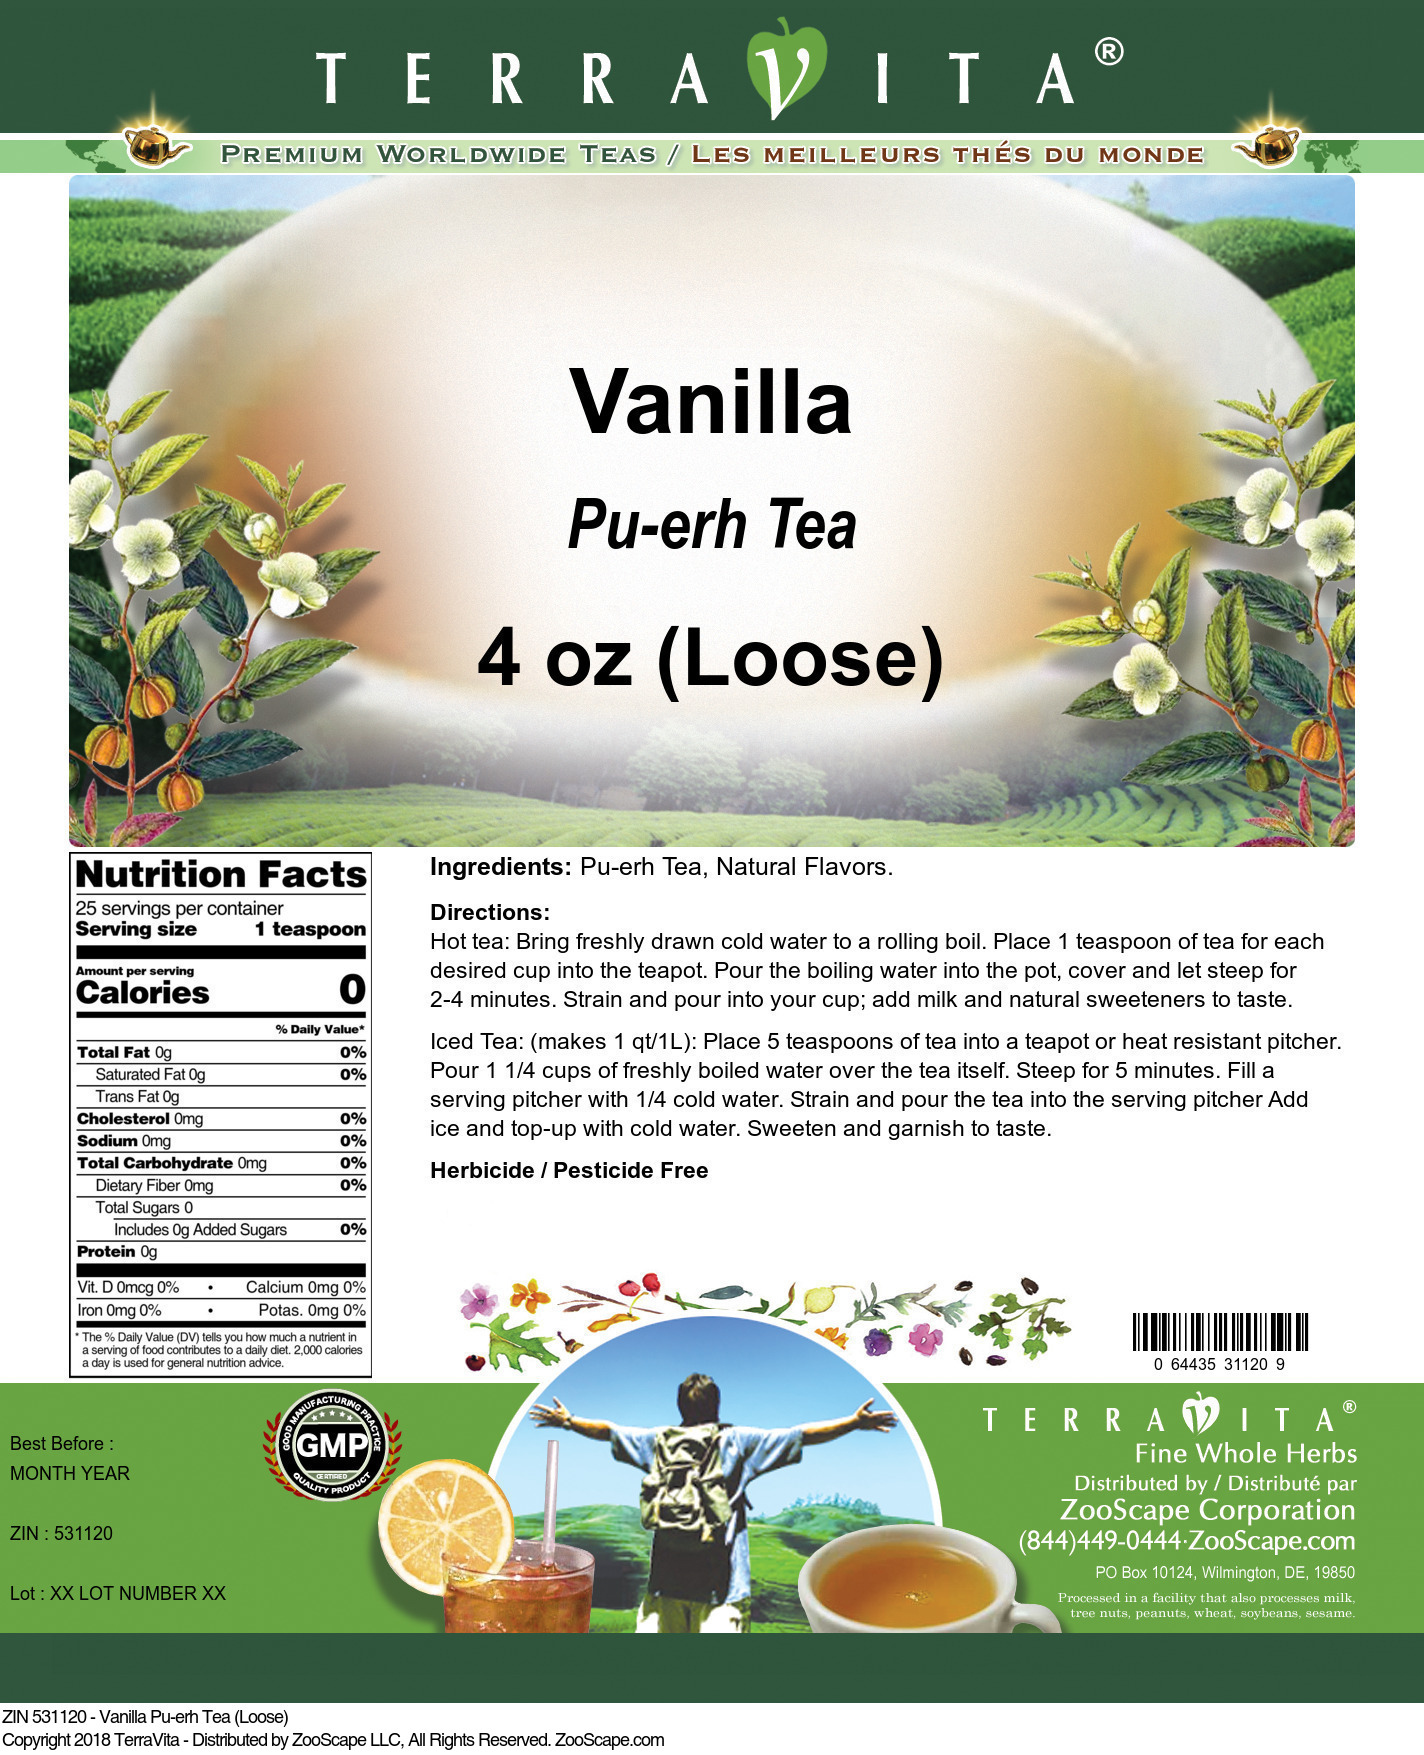 Vanilla Pu-erh Tea (Loose) - Label